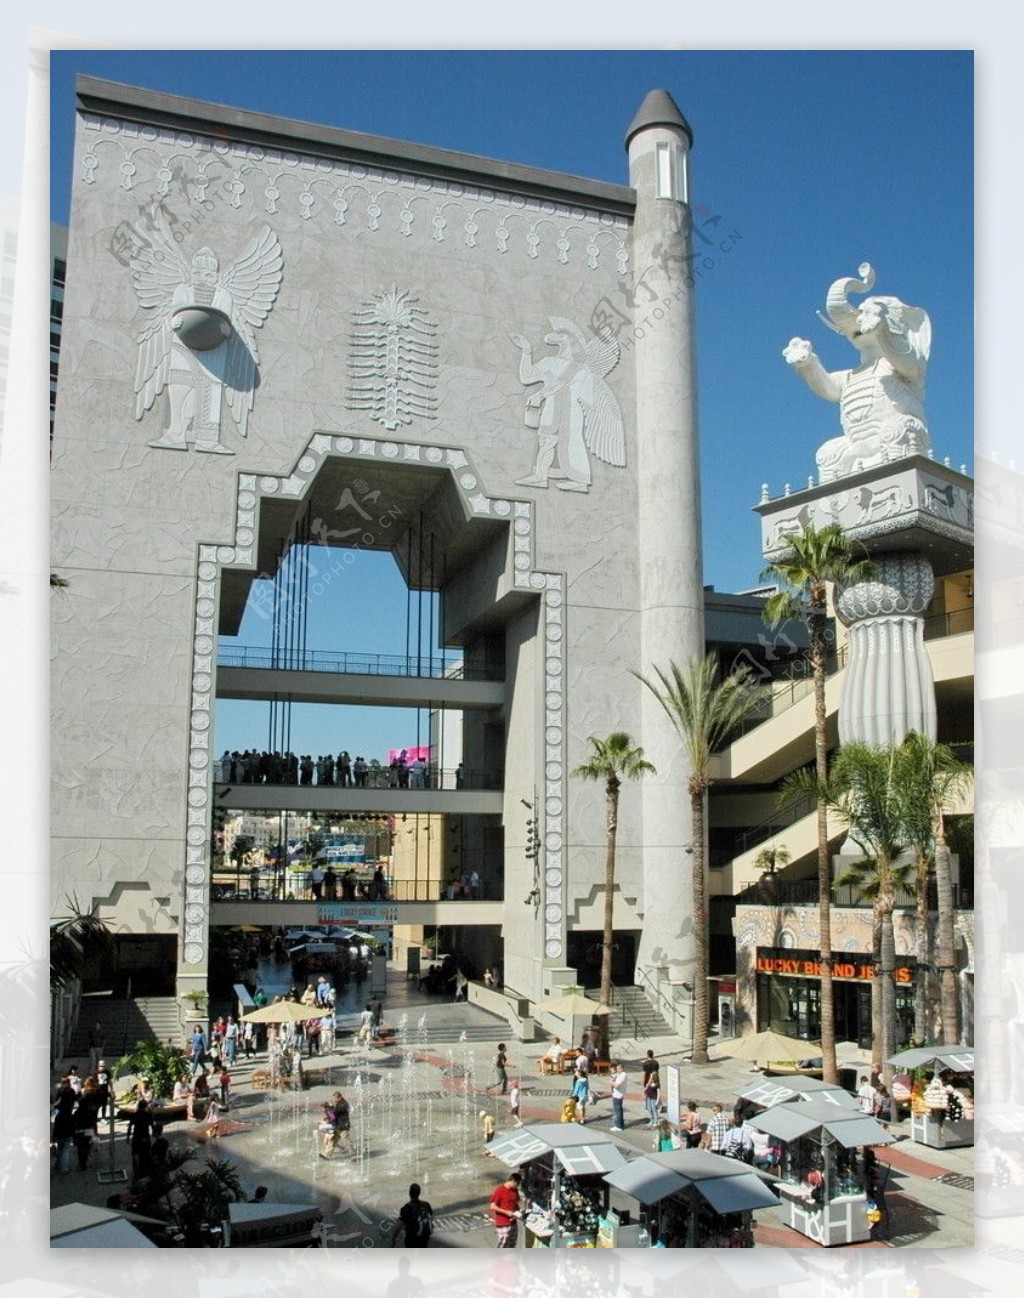 洛杉矶好莱坞游乐中心的门面图片